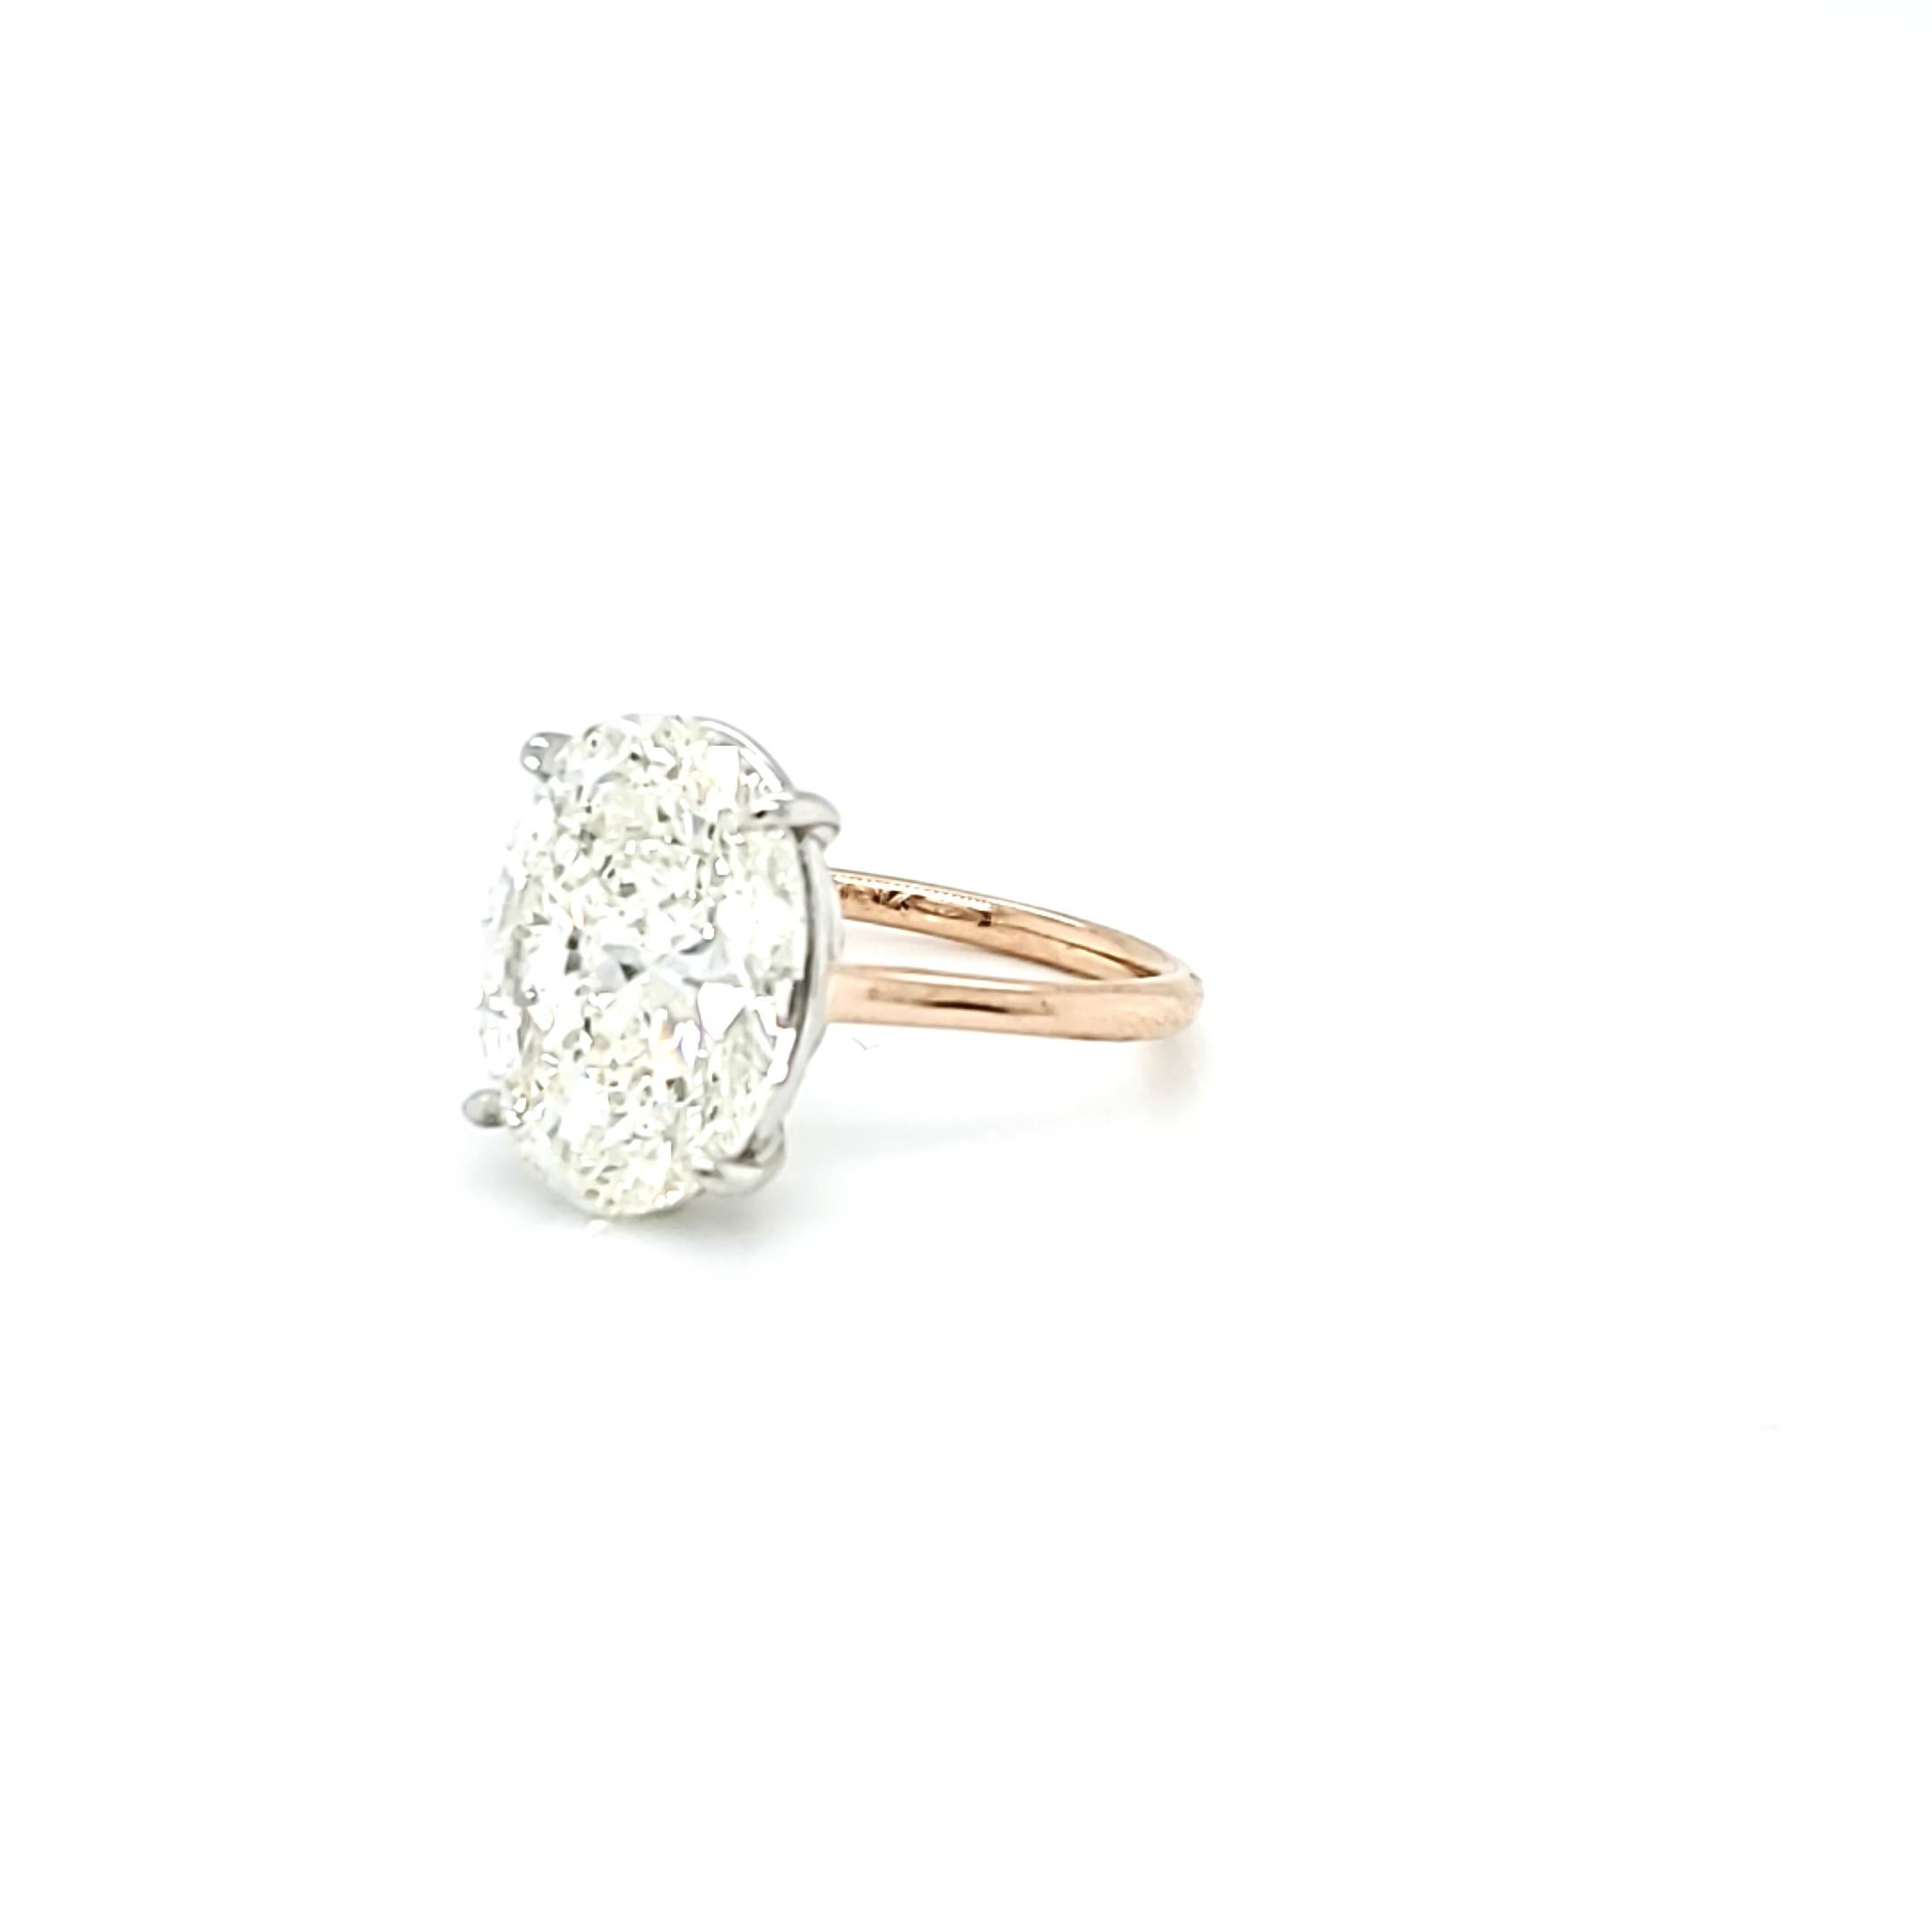 3.5 carat oval diamond ring